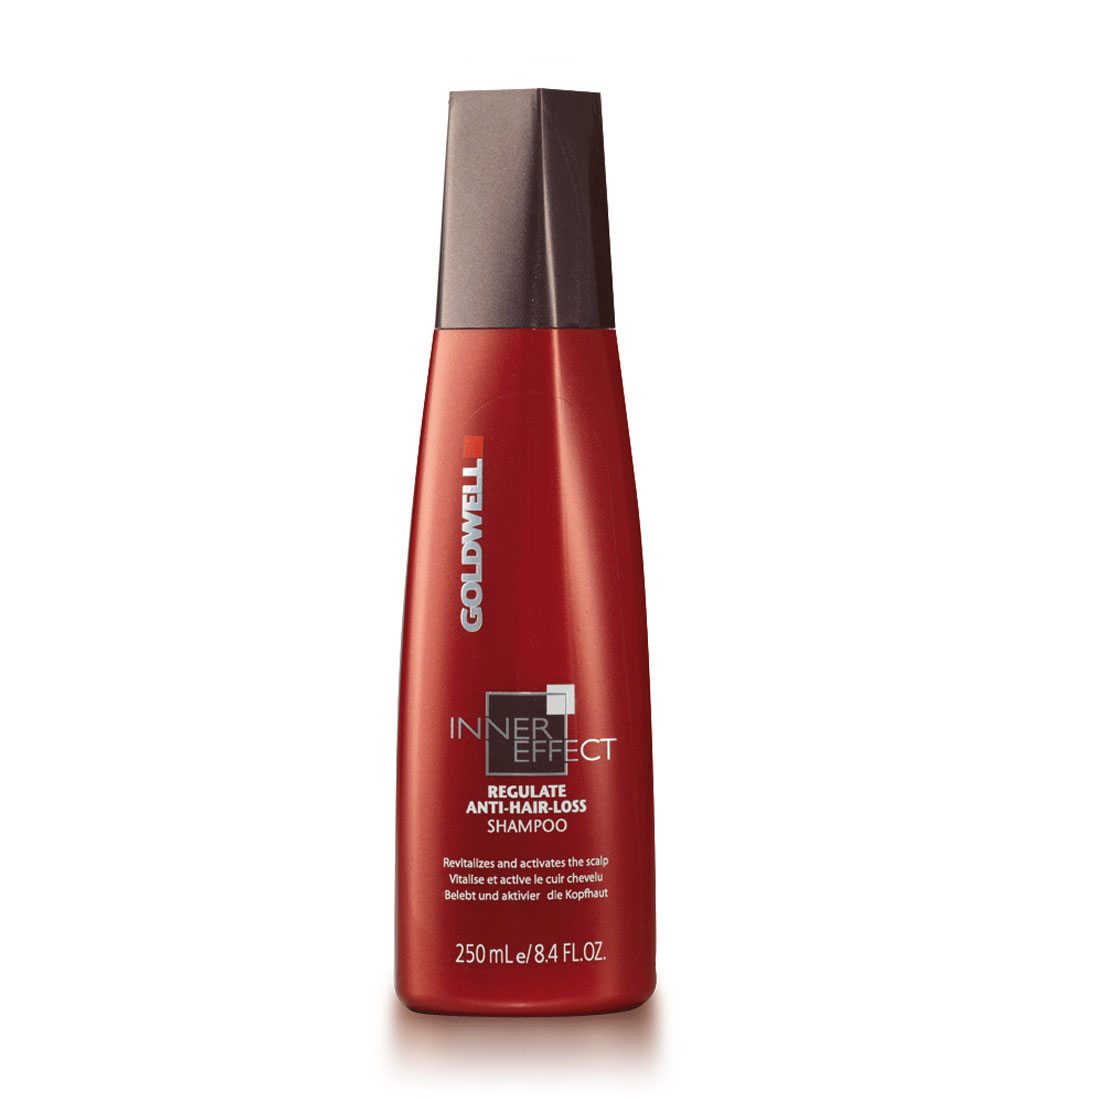 Goldwell Inner Effect Regulate Anti-Hair-Loss Shampoo 250 ml - Hairoutlet -  Alle kappersartikelen in de aanbieding!